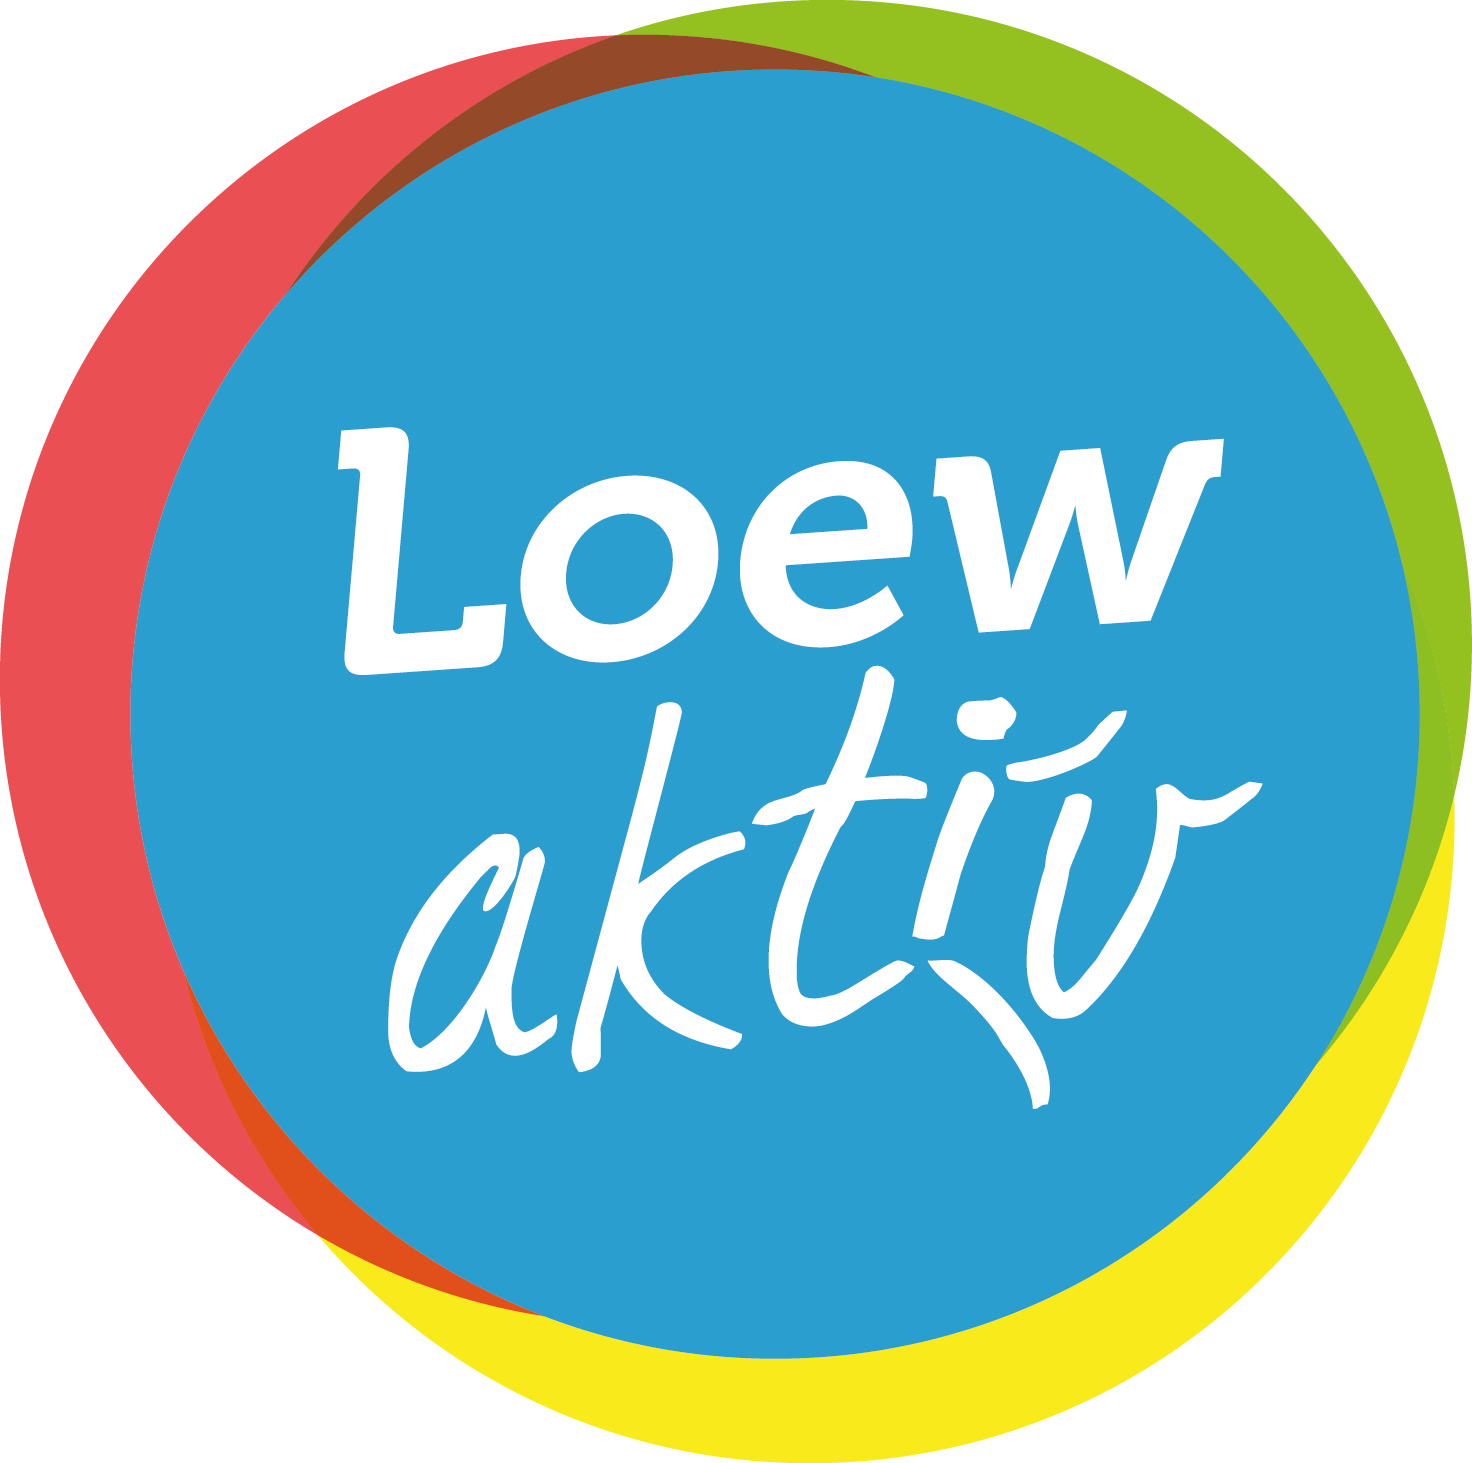 Loew-aktiv-4c-cmyk